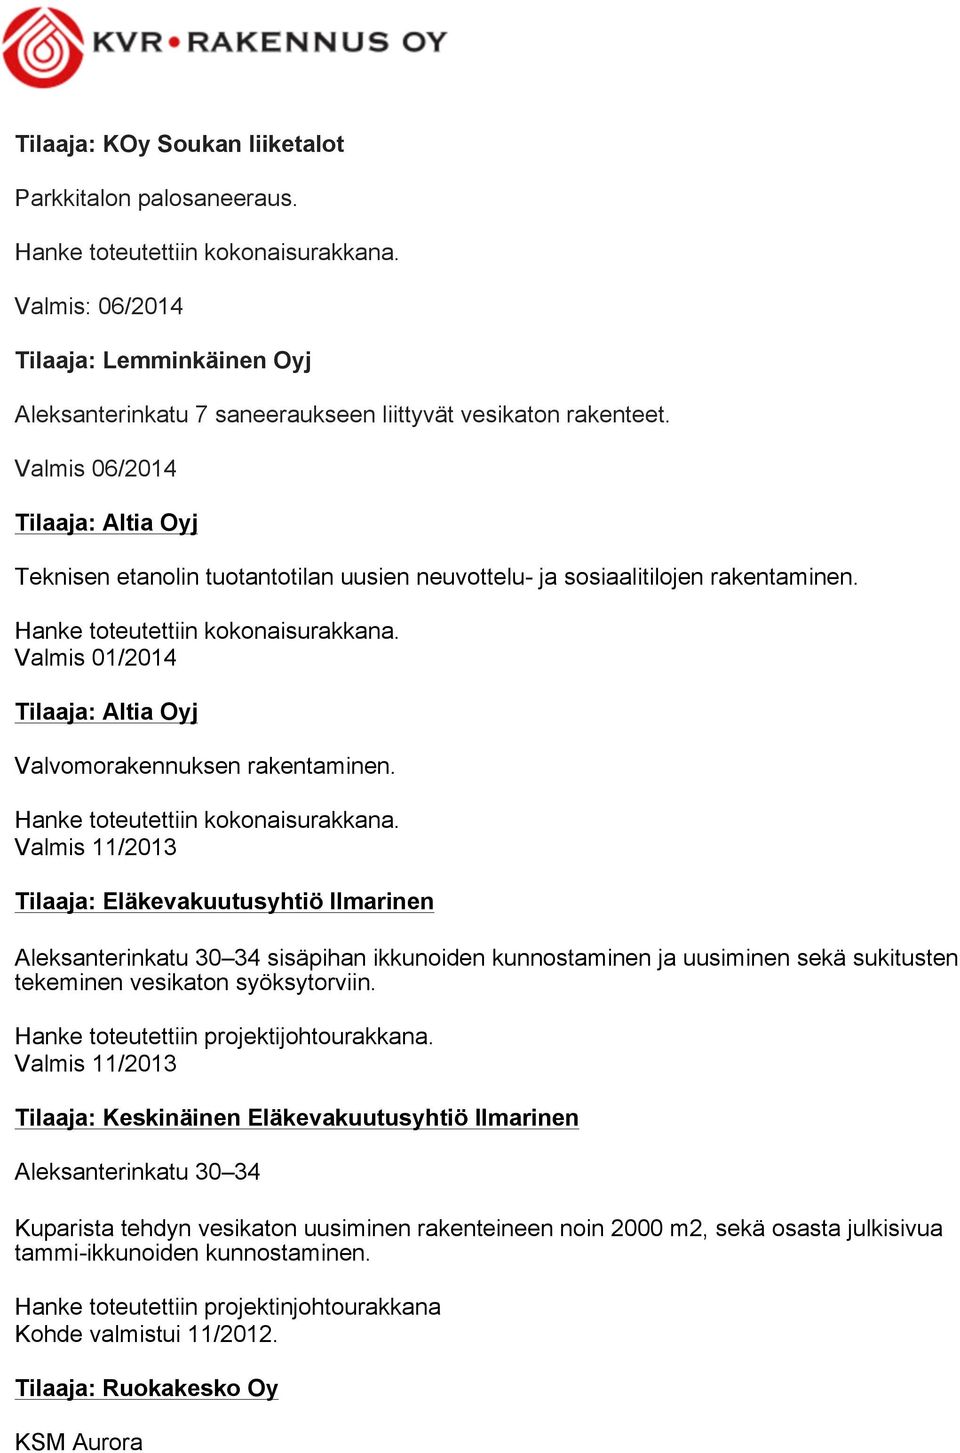 Valmis 01/2014 Tilaaja: Altia Oyj Valvomorakennuksen rakentaminen. Hanke toteutettiin kokonaisurakkana.